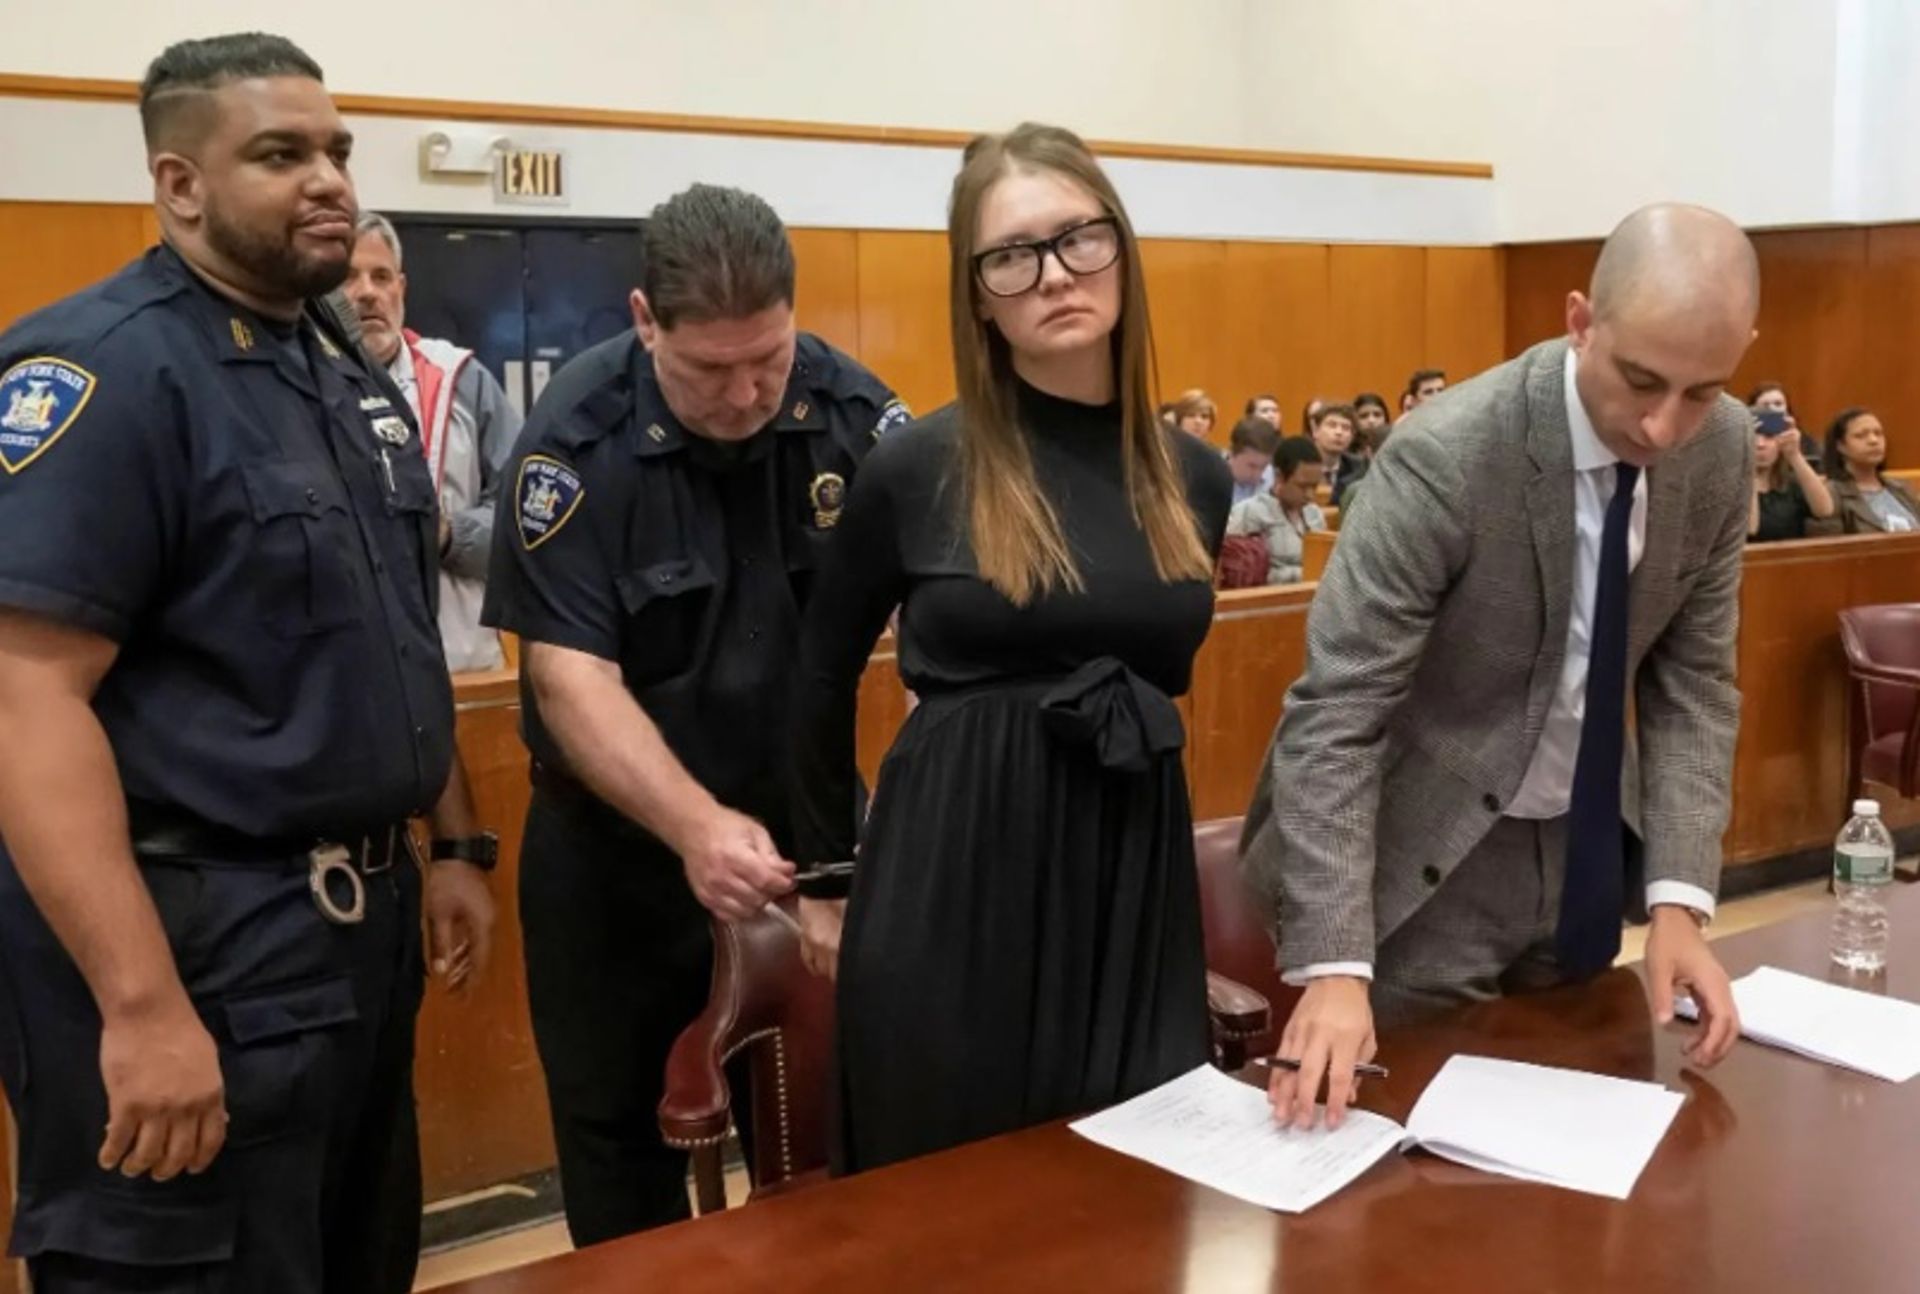 אנה סורוקין במהלך גזר הדין שלה בבית המשפט במנהטן ב-9 במאי 2019.

צילום: סטיבן הירש/פול דרך רויטרס